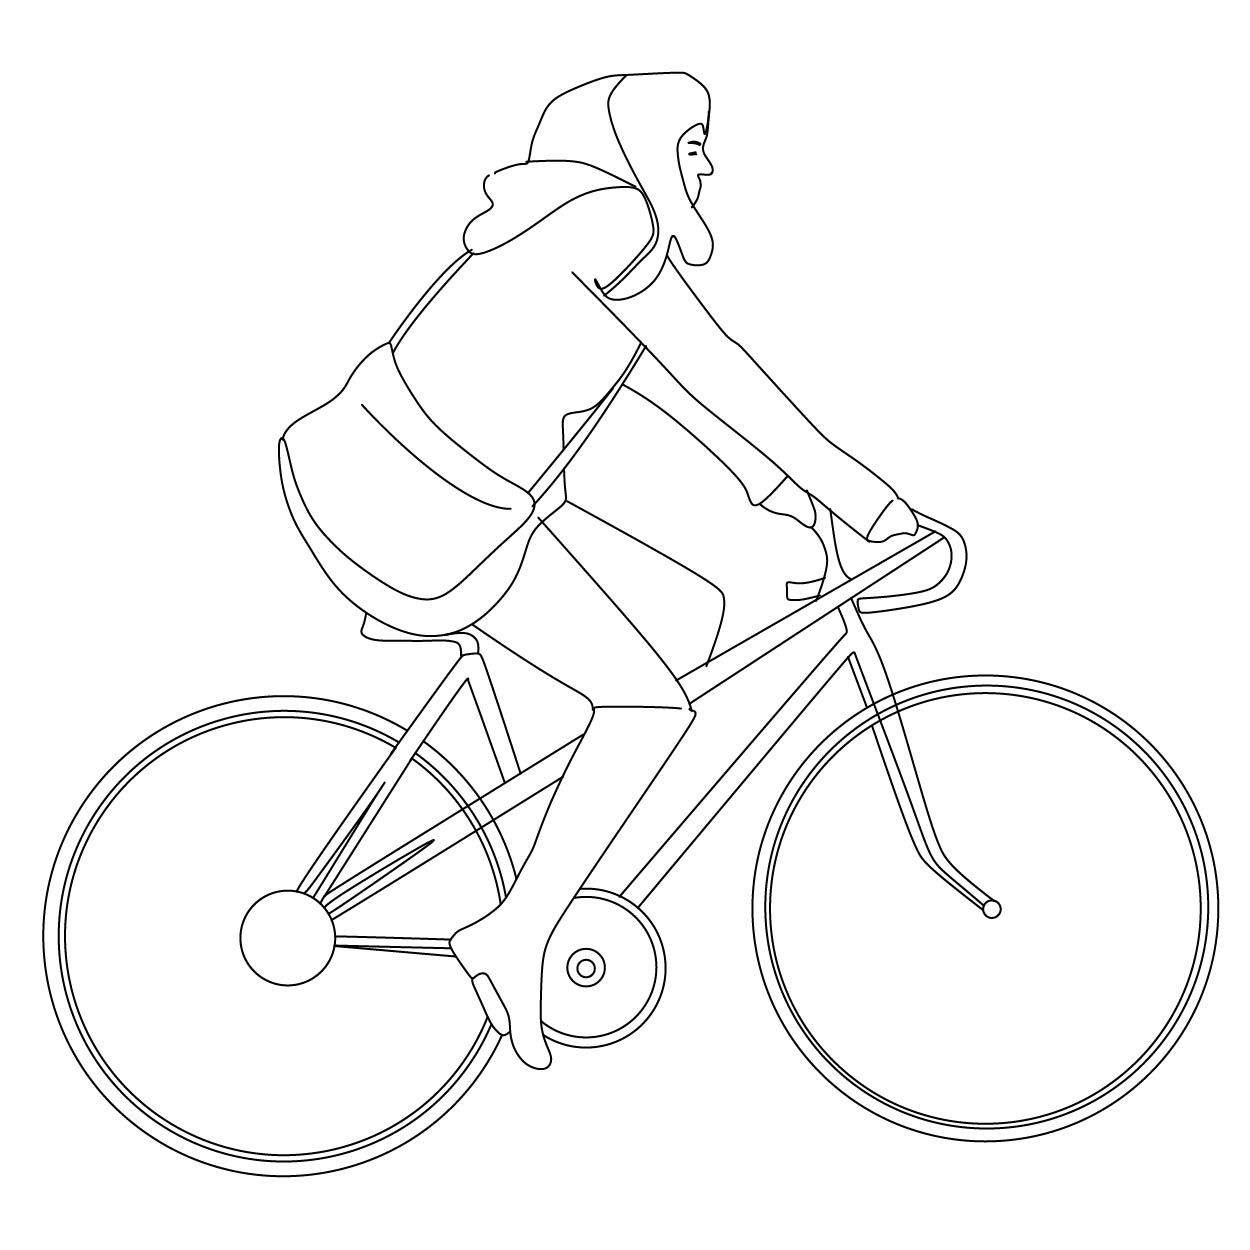 contoh gambar sketsa sepeda